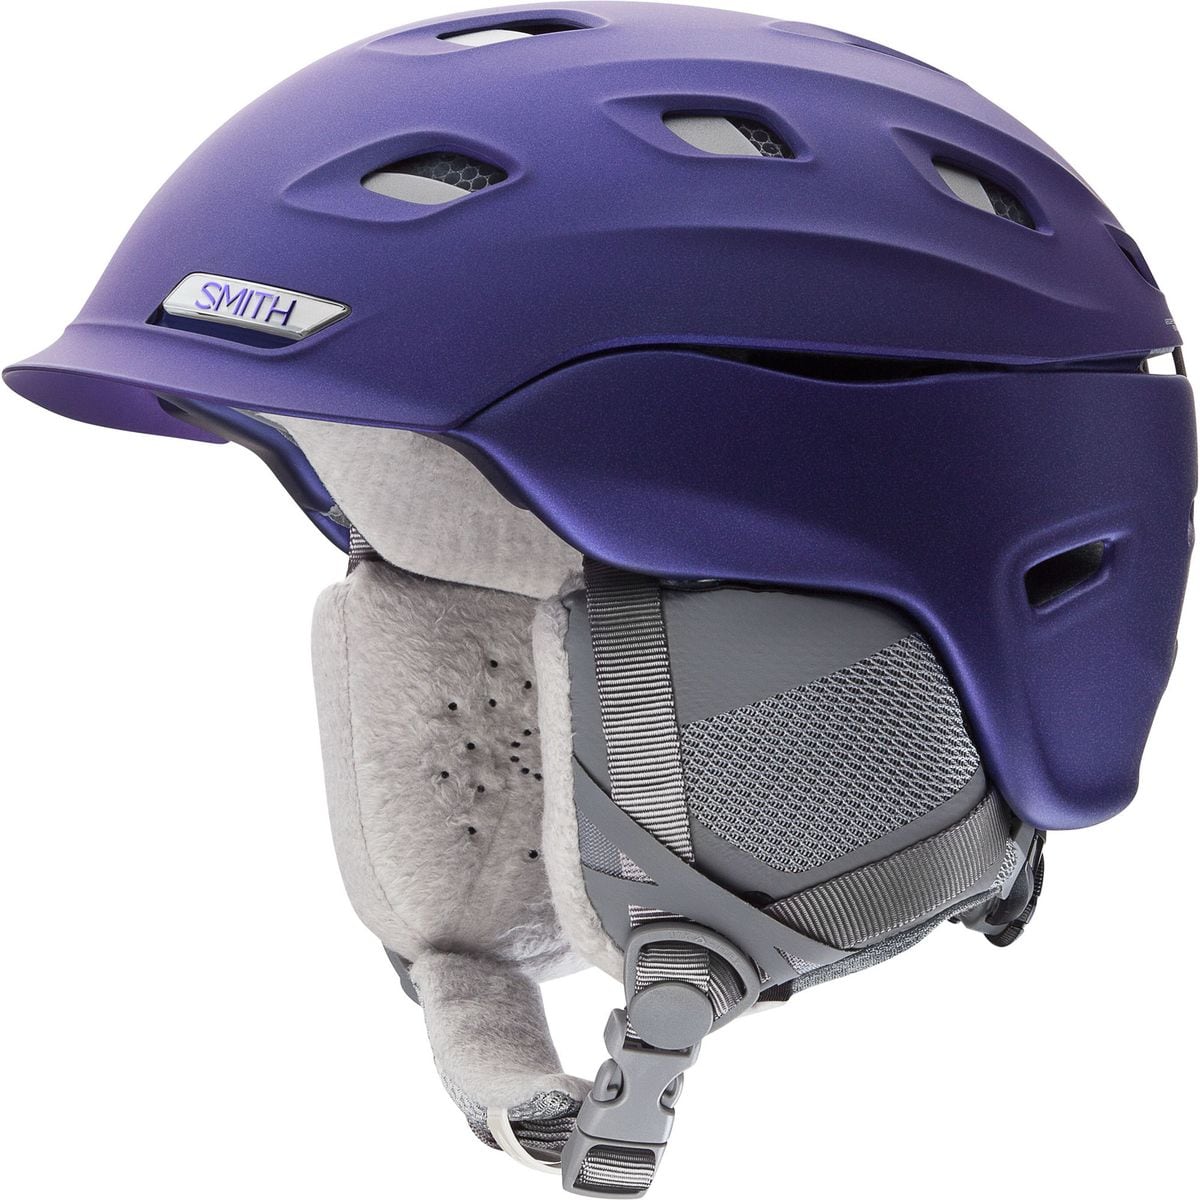 Smith Vantage Helmet - Women's Satin Ultraviolet